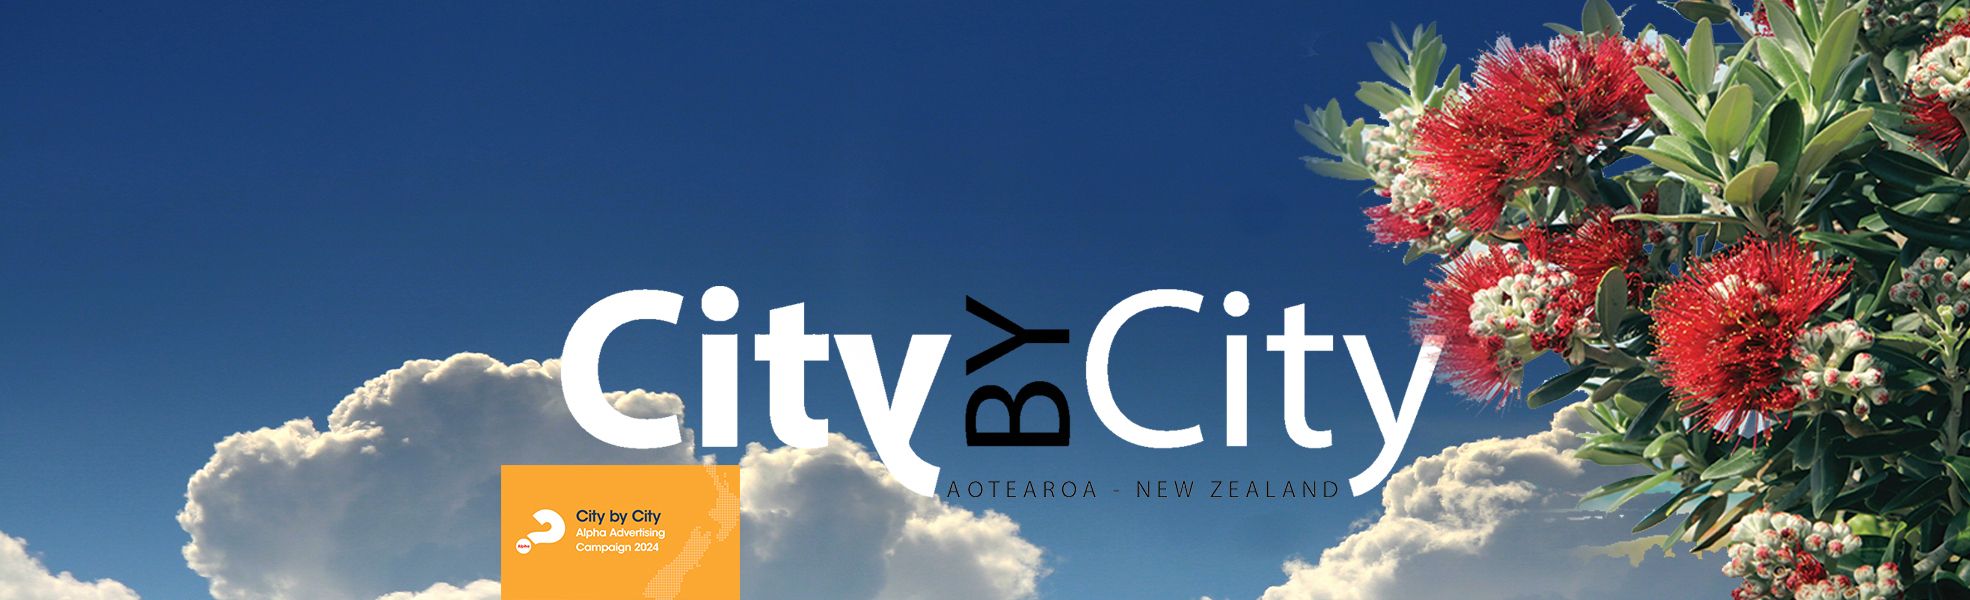 jpeg optimizer CitybyCity 1970x600 clouds Pohutakawa7